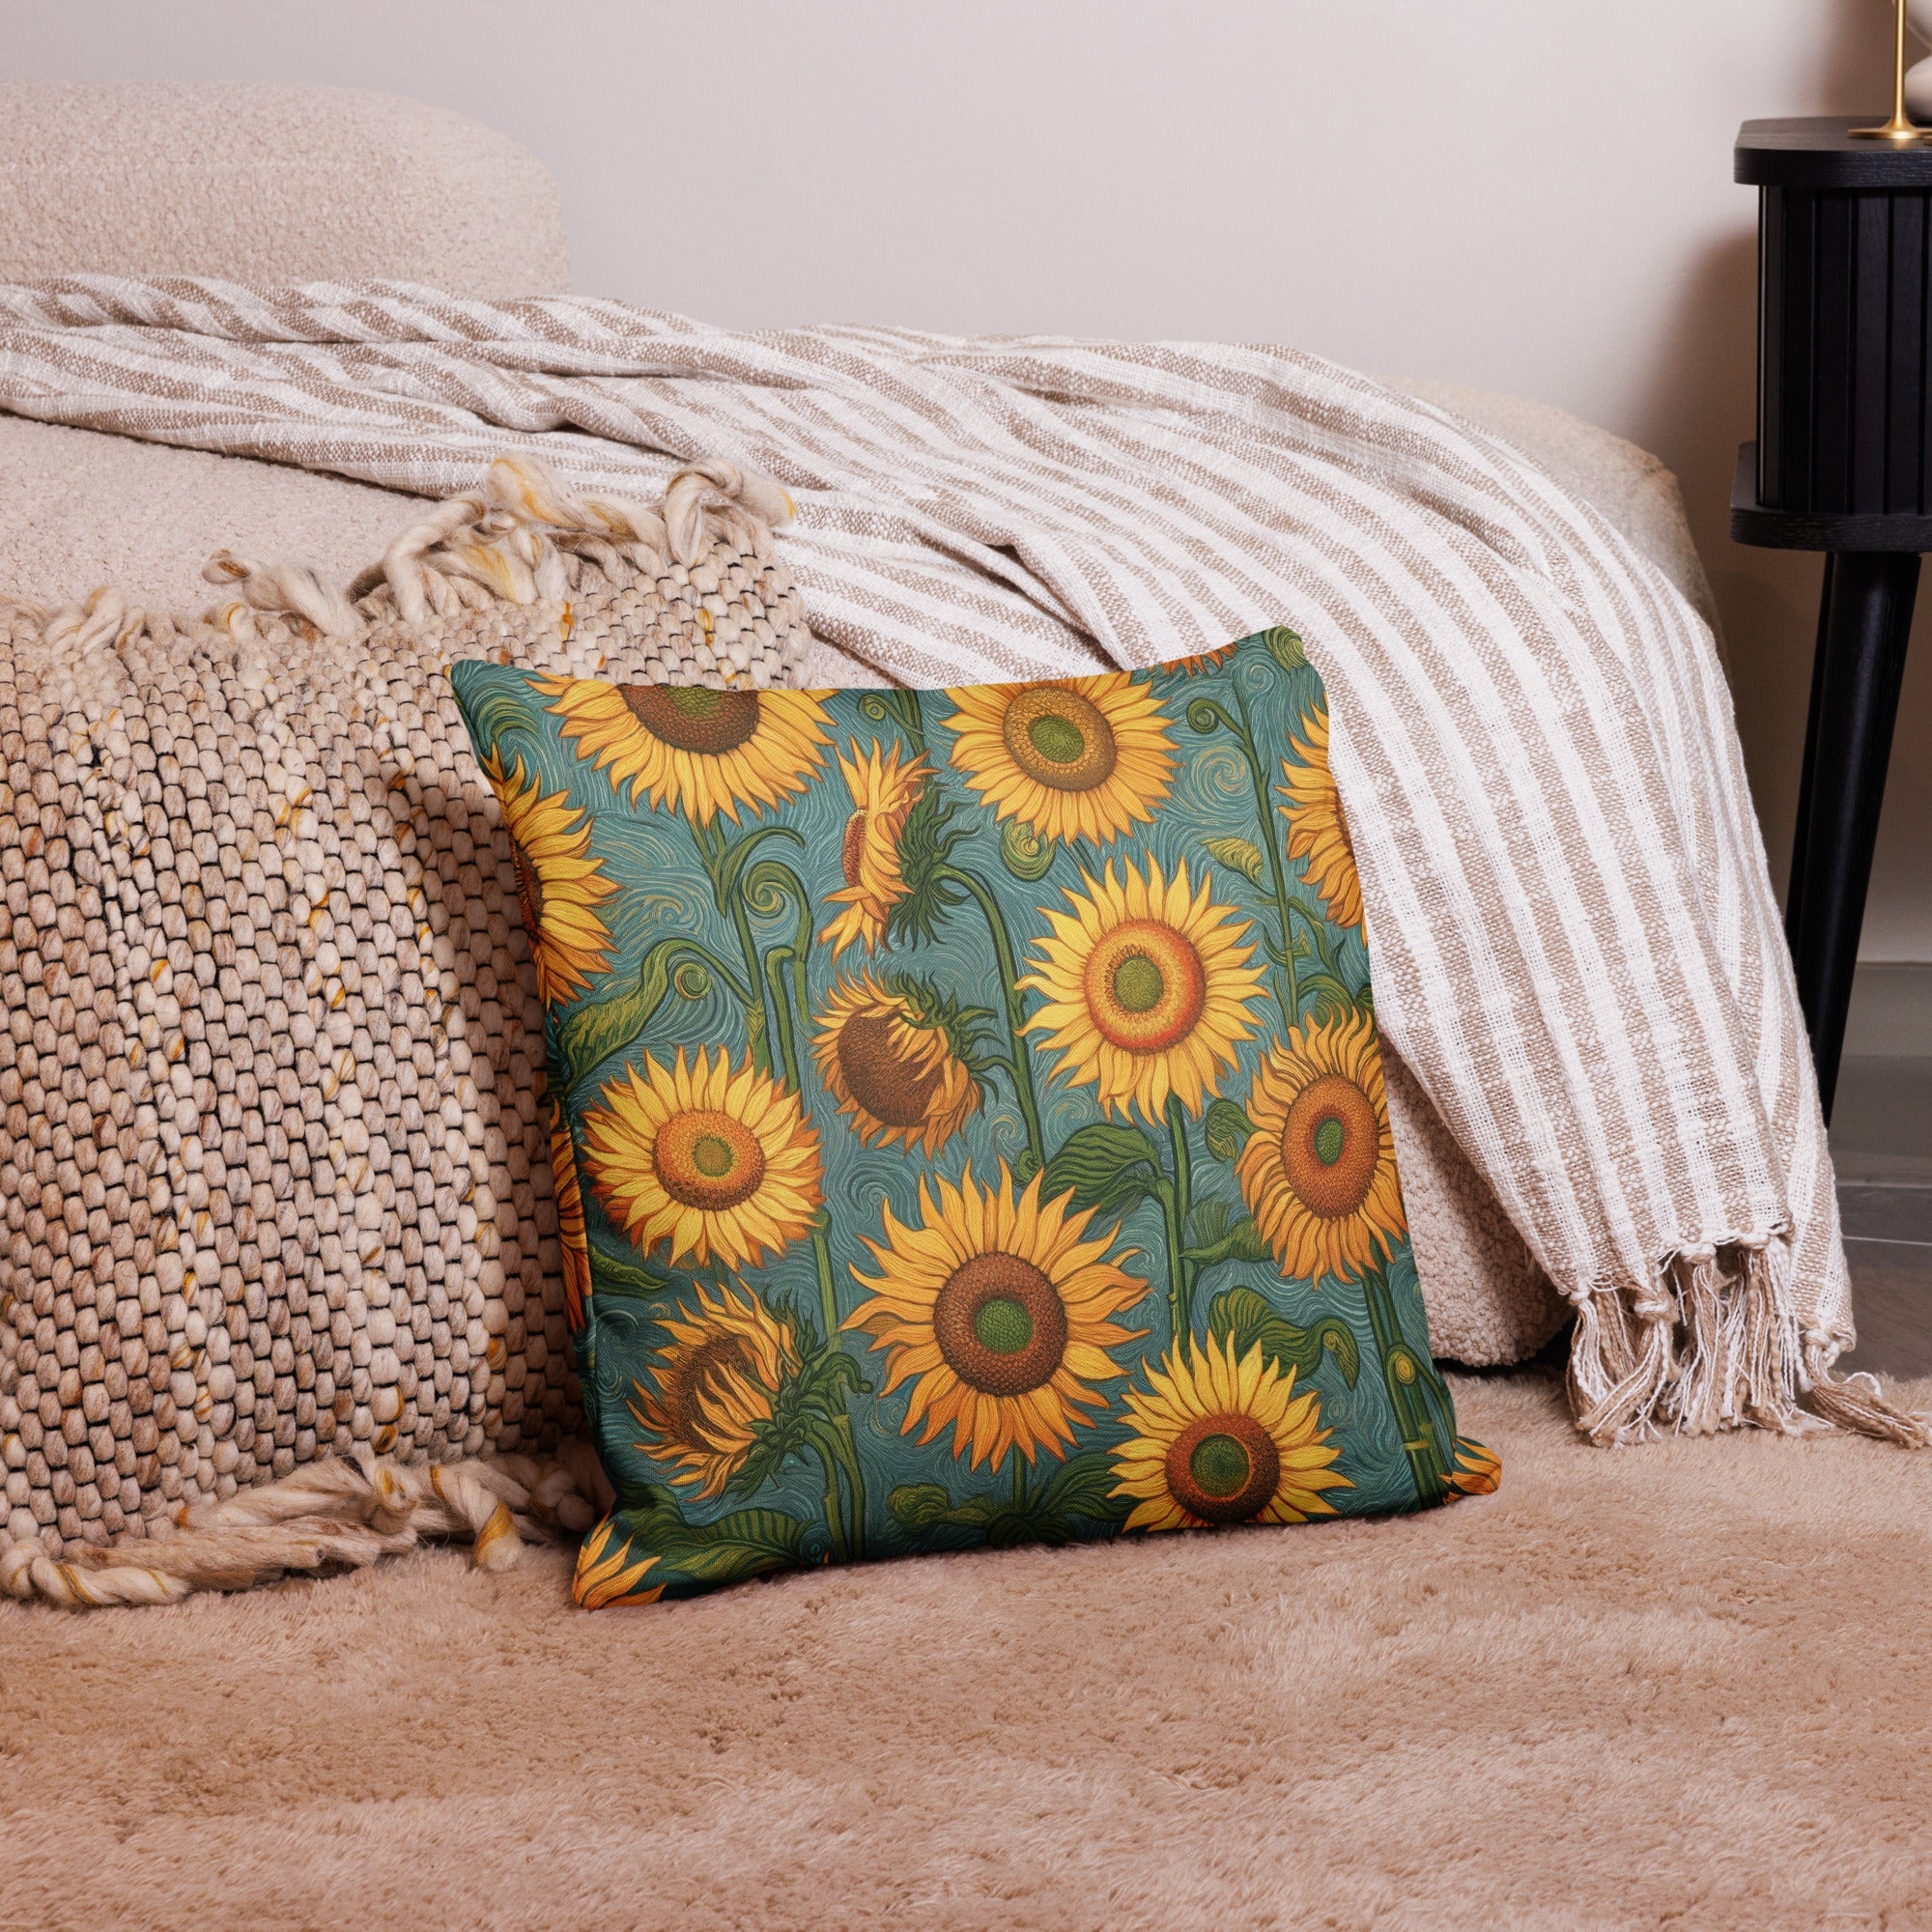 Vincent van Gogh 'Sunflowers' Famous Painting Premium Pillow | Premium Art Cushion